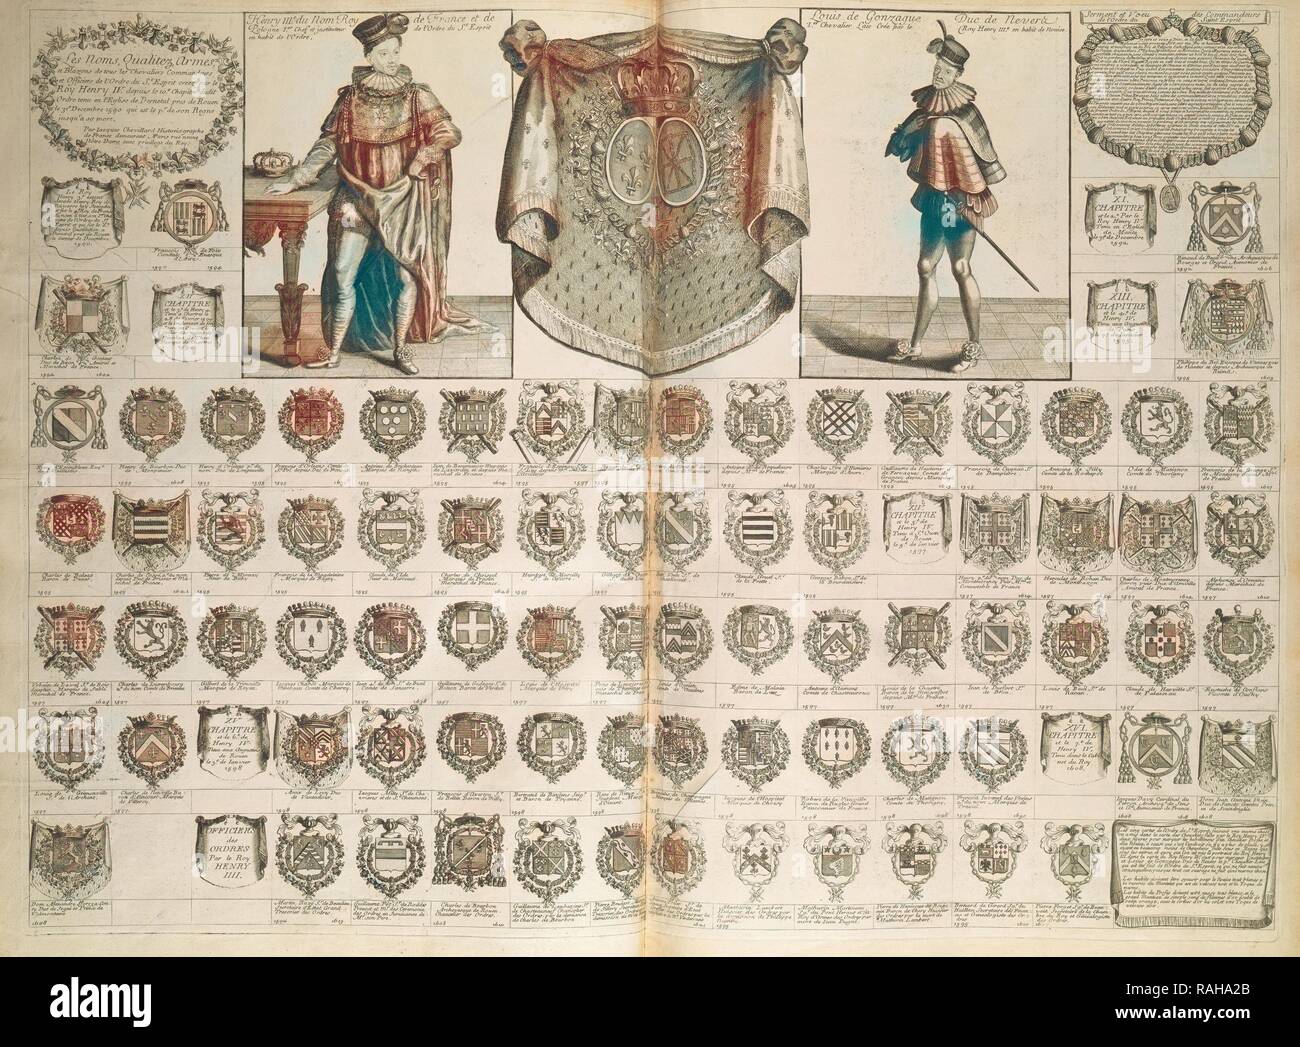 Le nom qualitéz armes et blasons, Cartes de blason, de chronologie, et d' histoire, Chevillard, J. (Jacques), 1695- repensé Photo Stock - Alamy